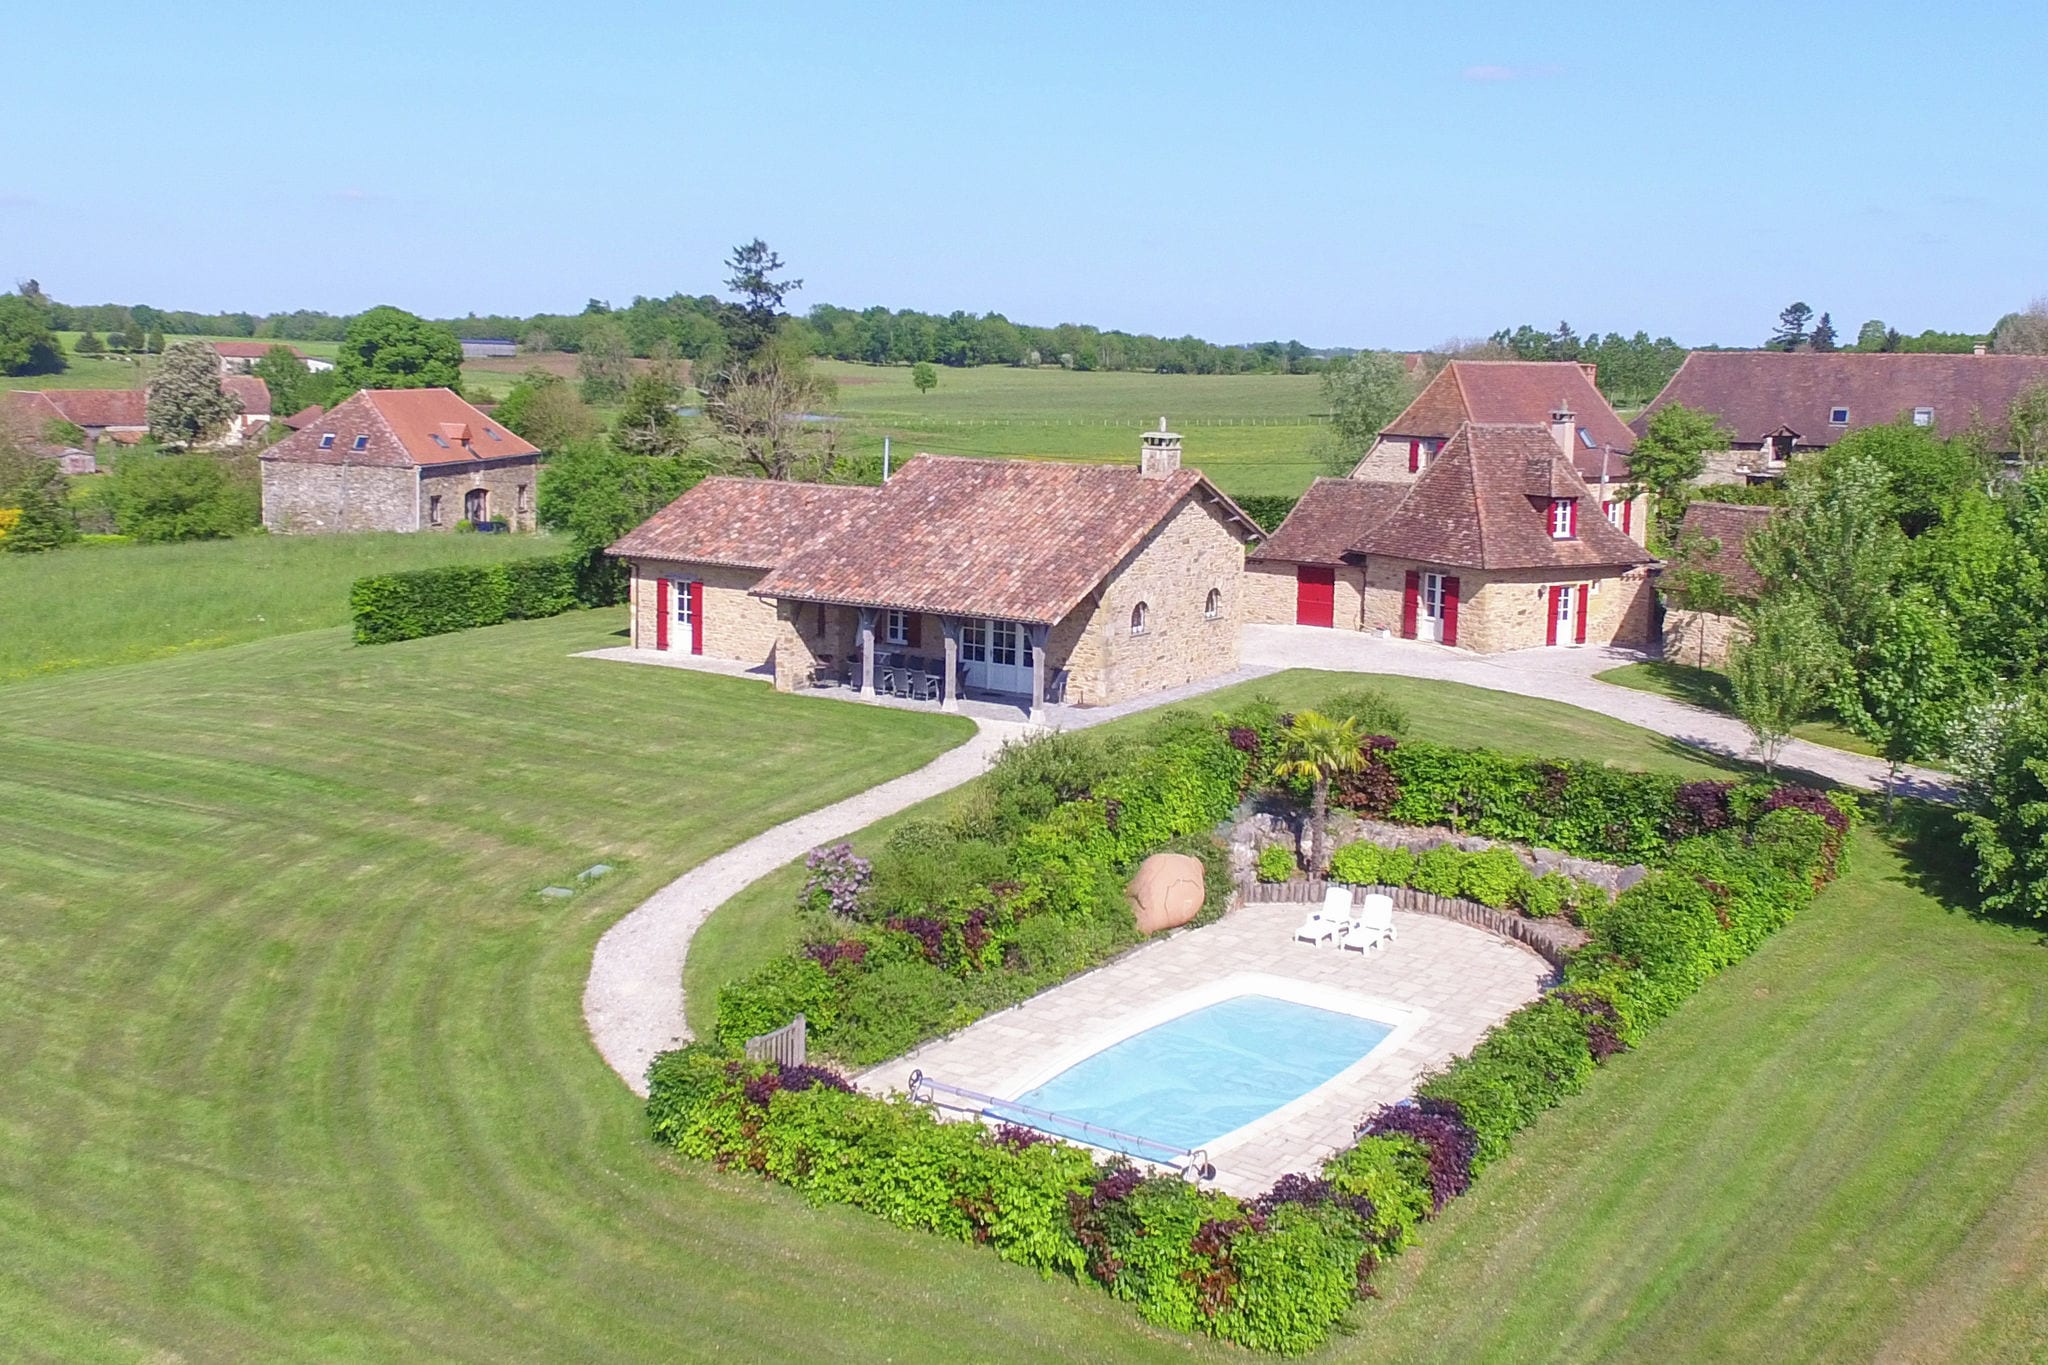 Luxueuse villa avec maison d'hôtes indépendante et une piscine privée chauffée.